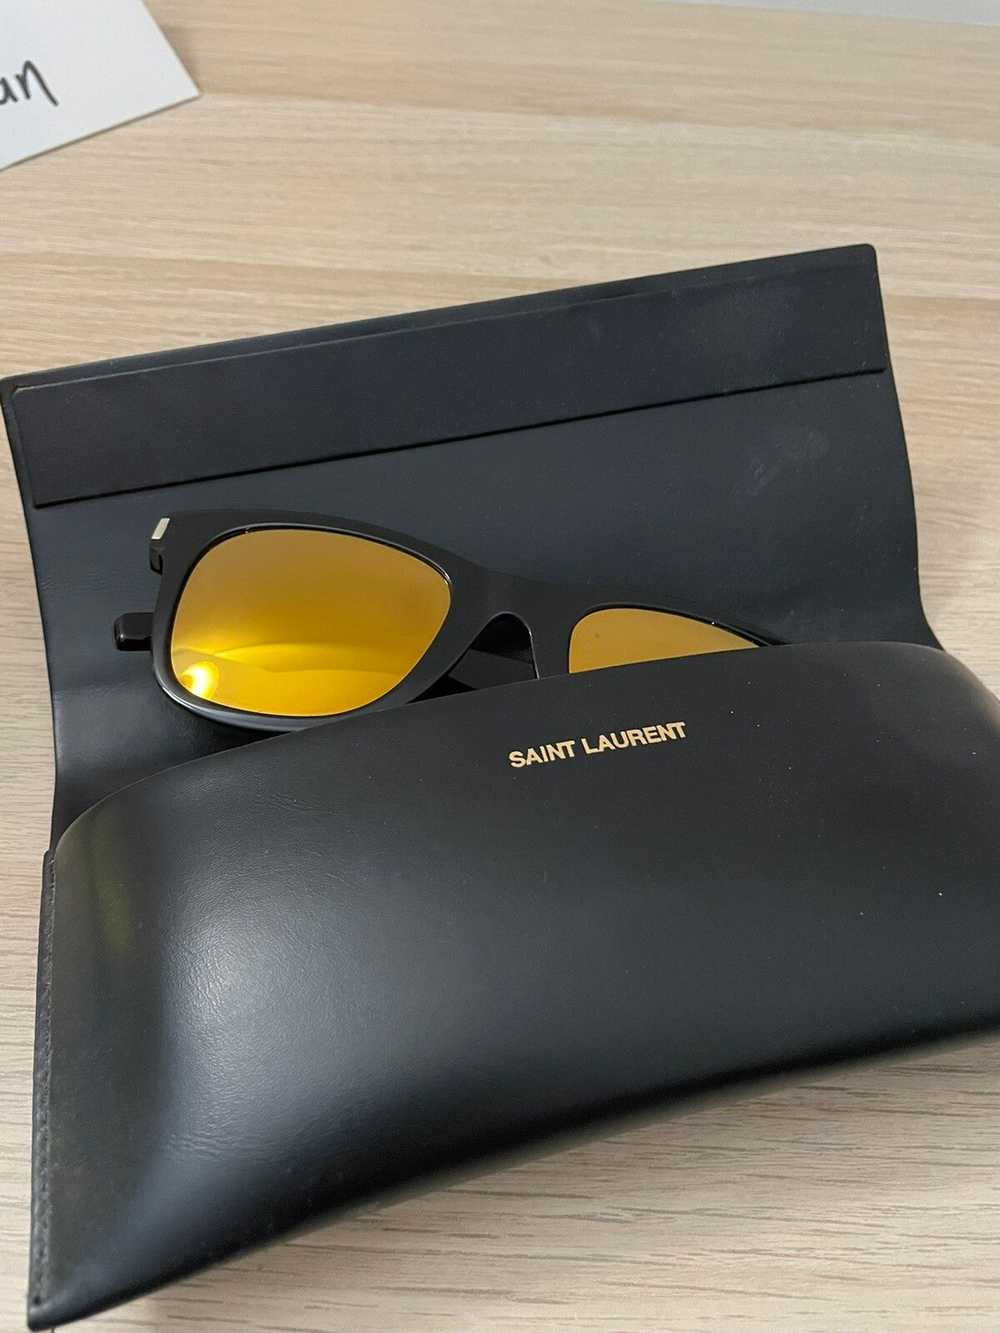 Yves Saint Laurent Saint Laurent Sunglasses - image 2